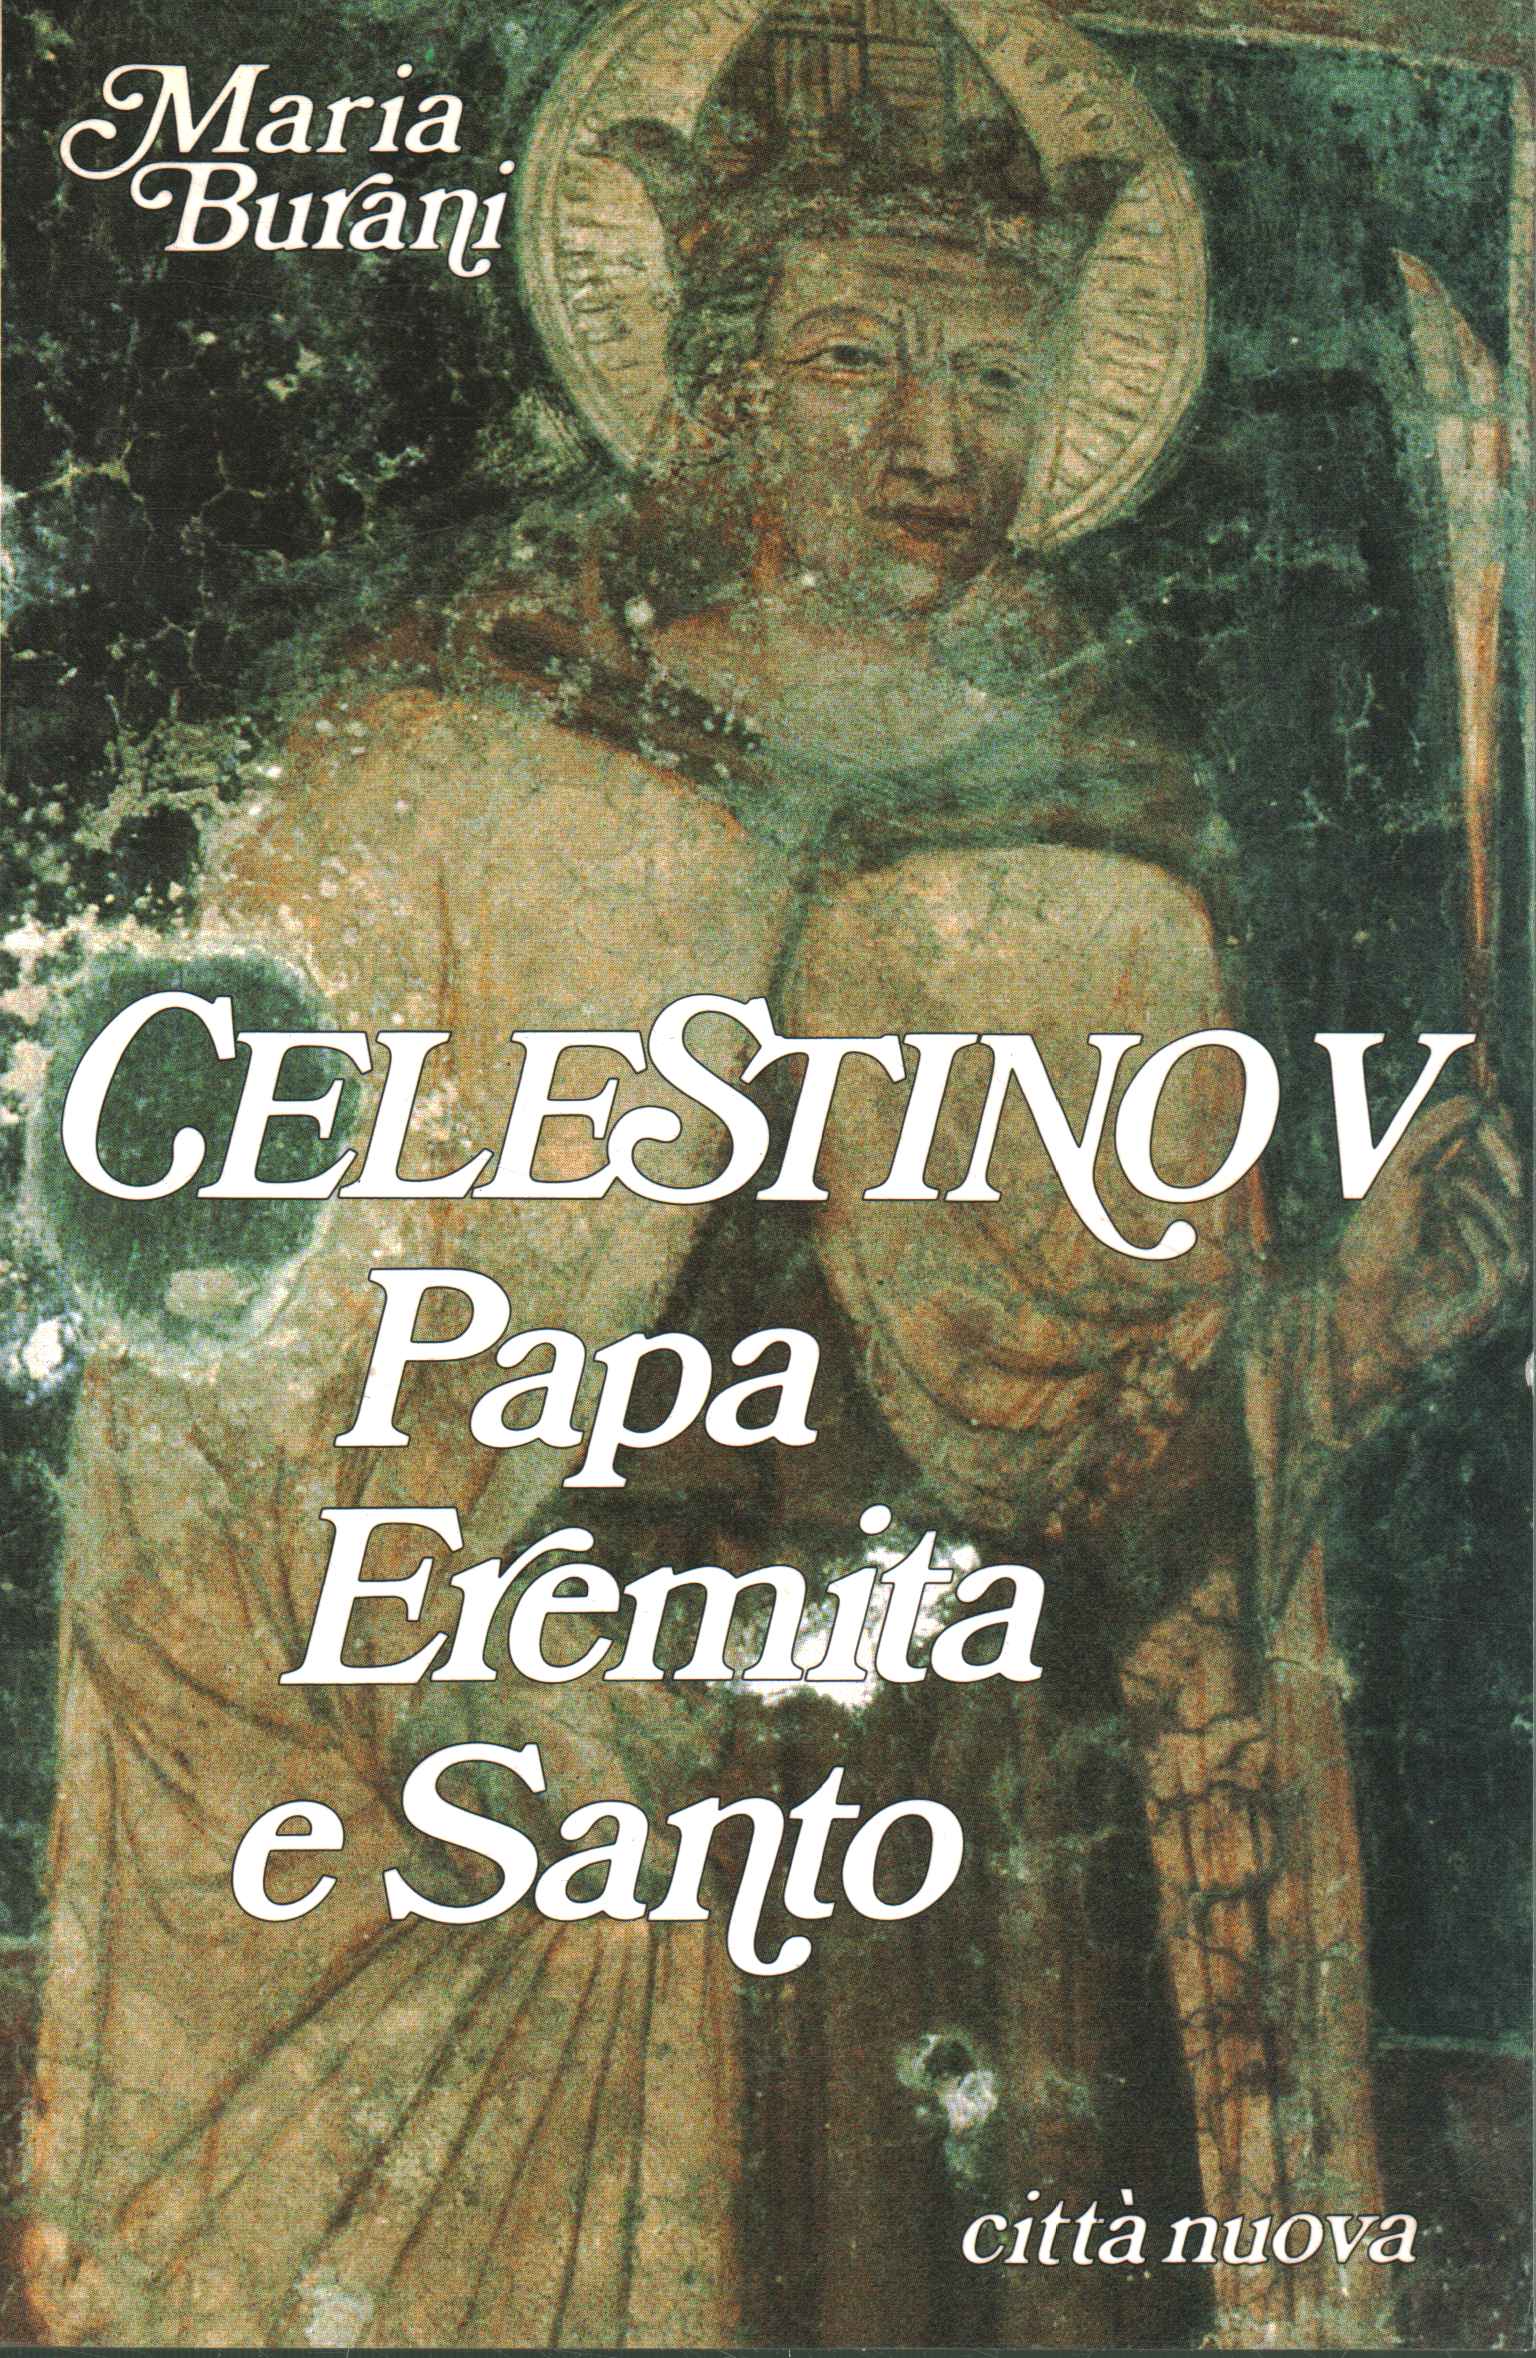 Celestine V (1215-1296)